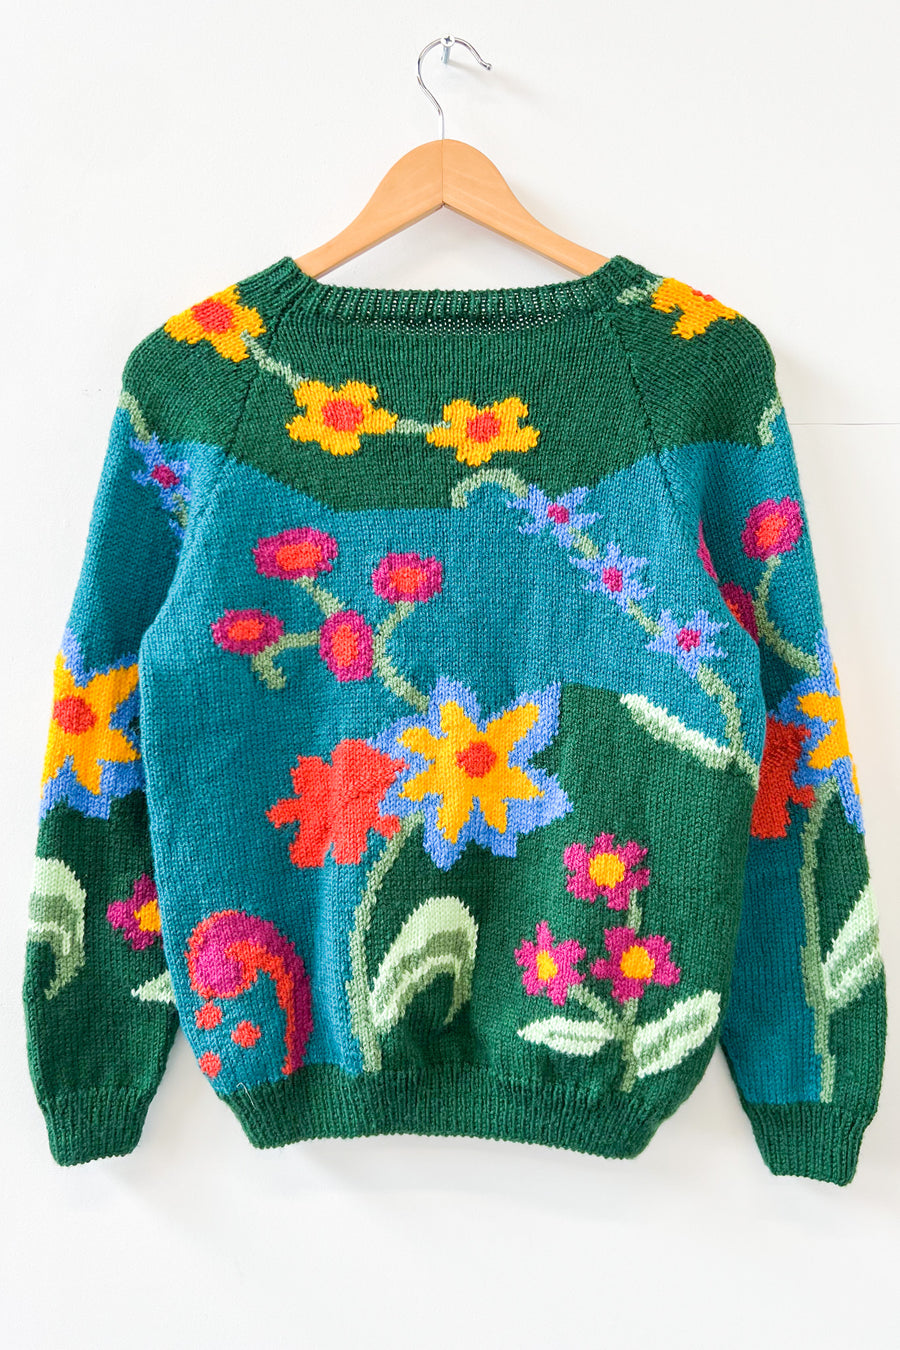 Vintage Botanical Hand Knitted Jumper